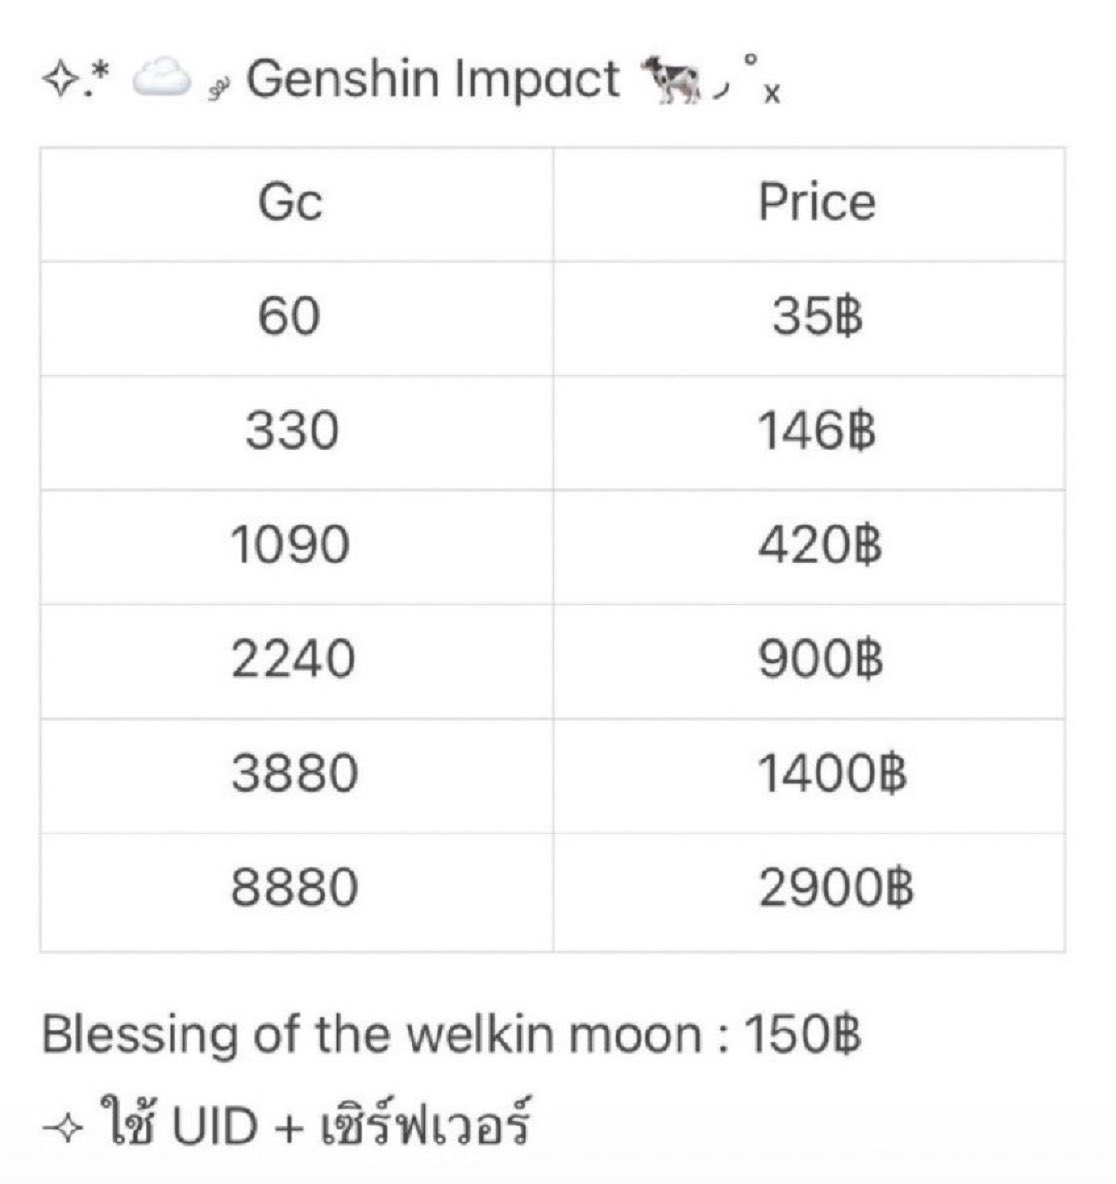 ✧.* ☁️  ༘ Genshin Impact 🐄◞

⌯✧ ใช้แค่ UId + เซิร์ฟเวอร์  ɞ

Dmแอคปักหมุด / line : @982pefwu 

#rov #เติมrov
#เติมเกนชิน #รับเติมเกนชิน #เติมgenshin #รับเติมgenshin #ตลาดนัดเกนชิน #GenshinImpactth